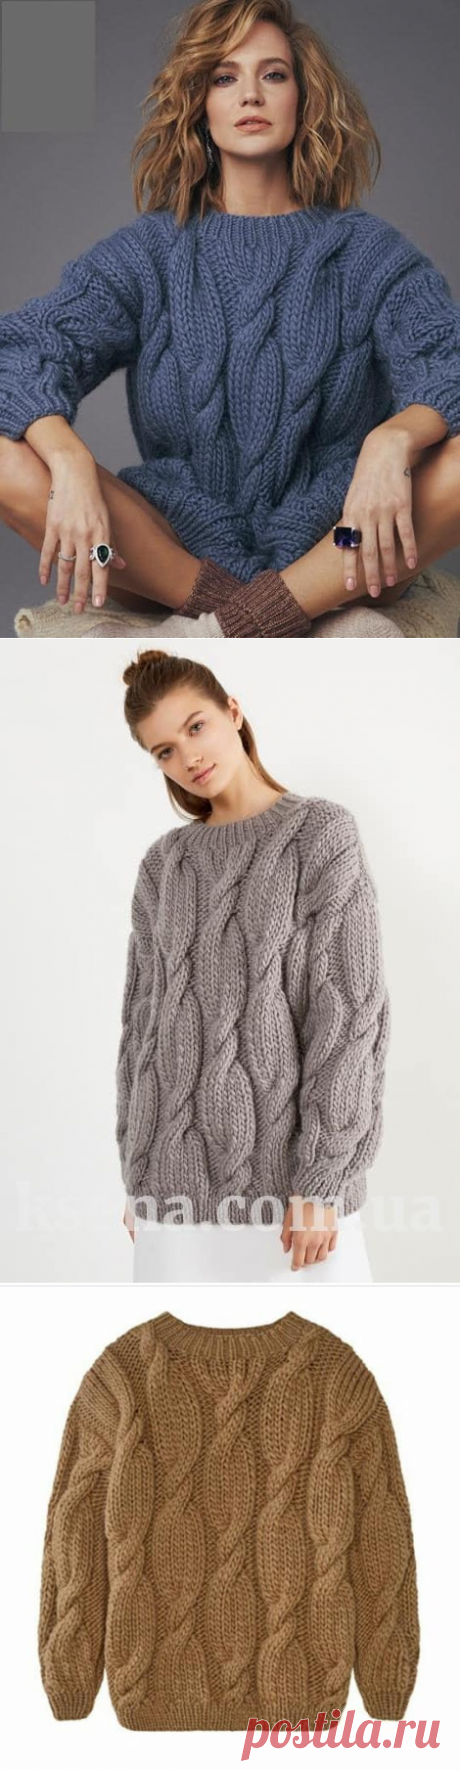 вязаный свитер глюкоза купить - женский вязаный свитер - Ksena